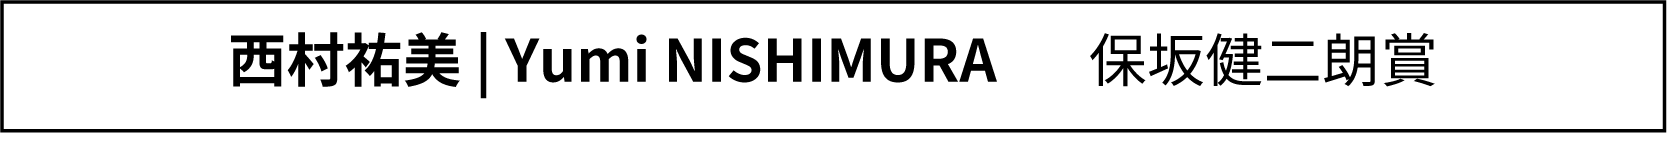 YumiNishimura.png